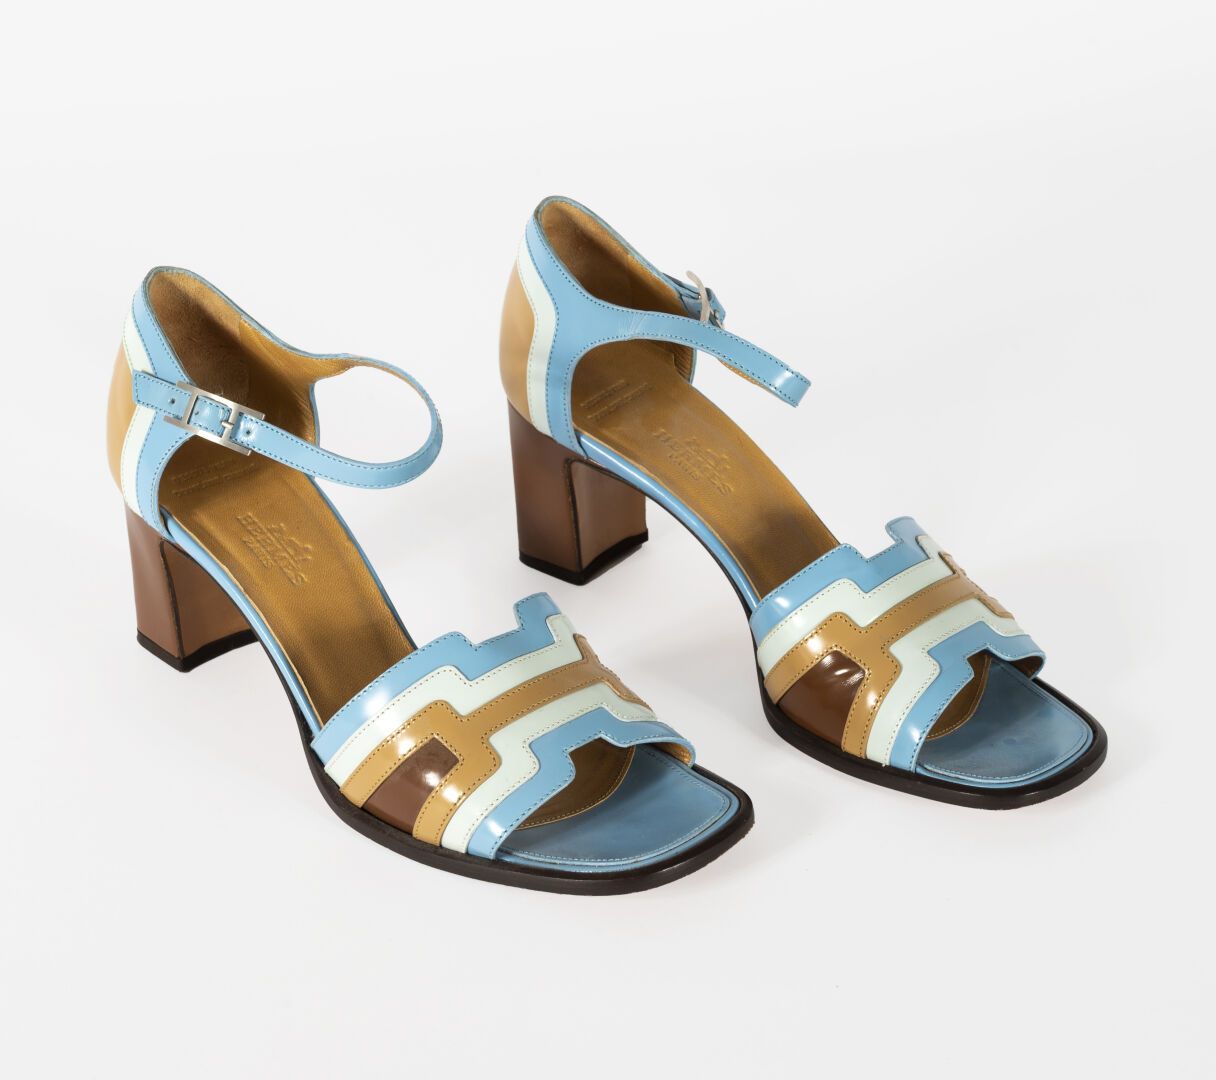 HERMES Hermès - Paio di sandali in vernice blu e beige

misura 37,5